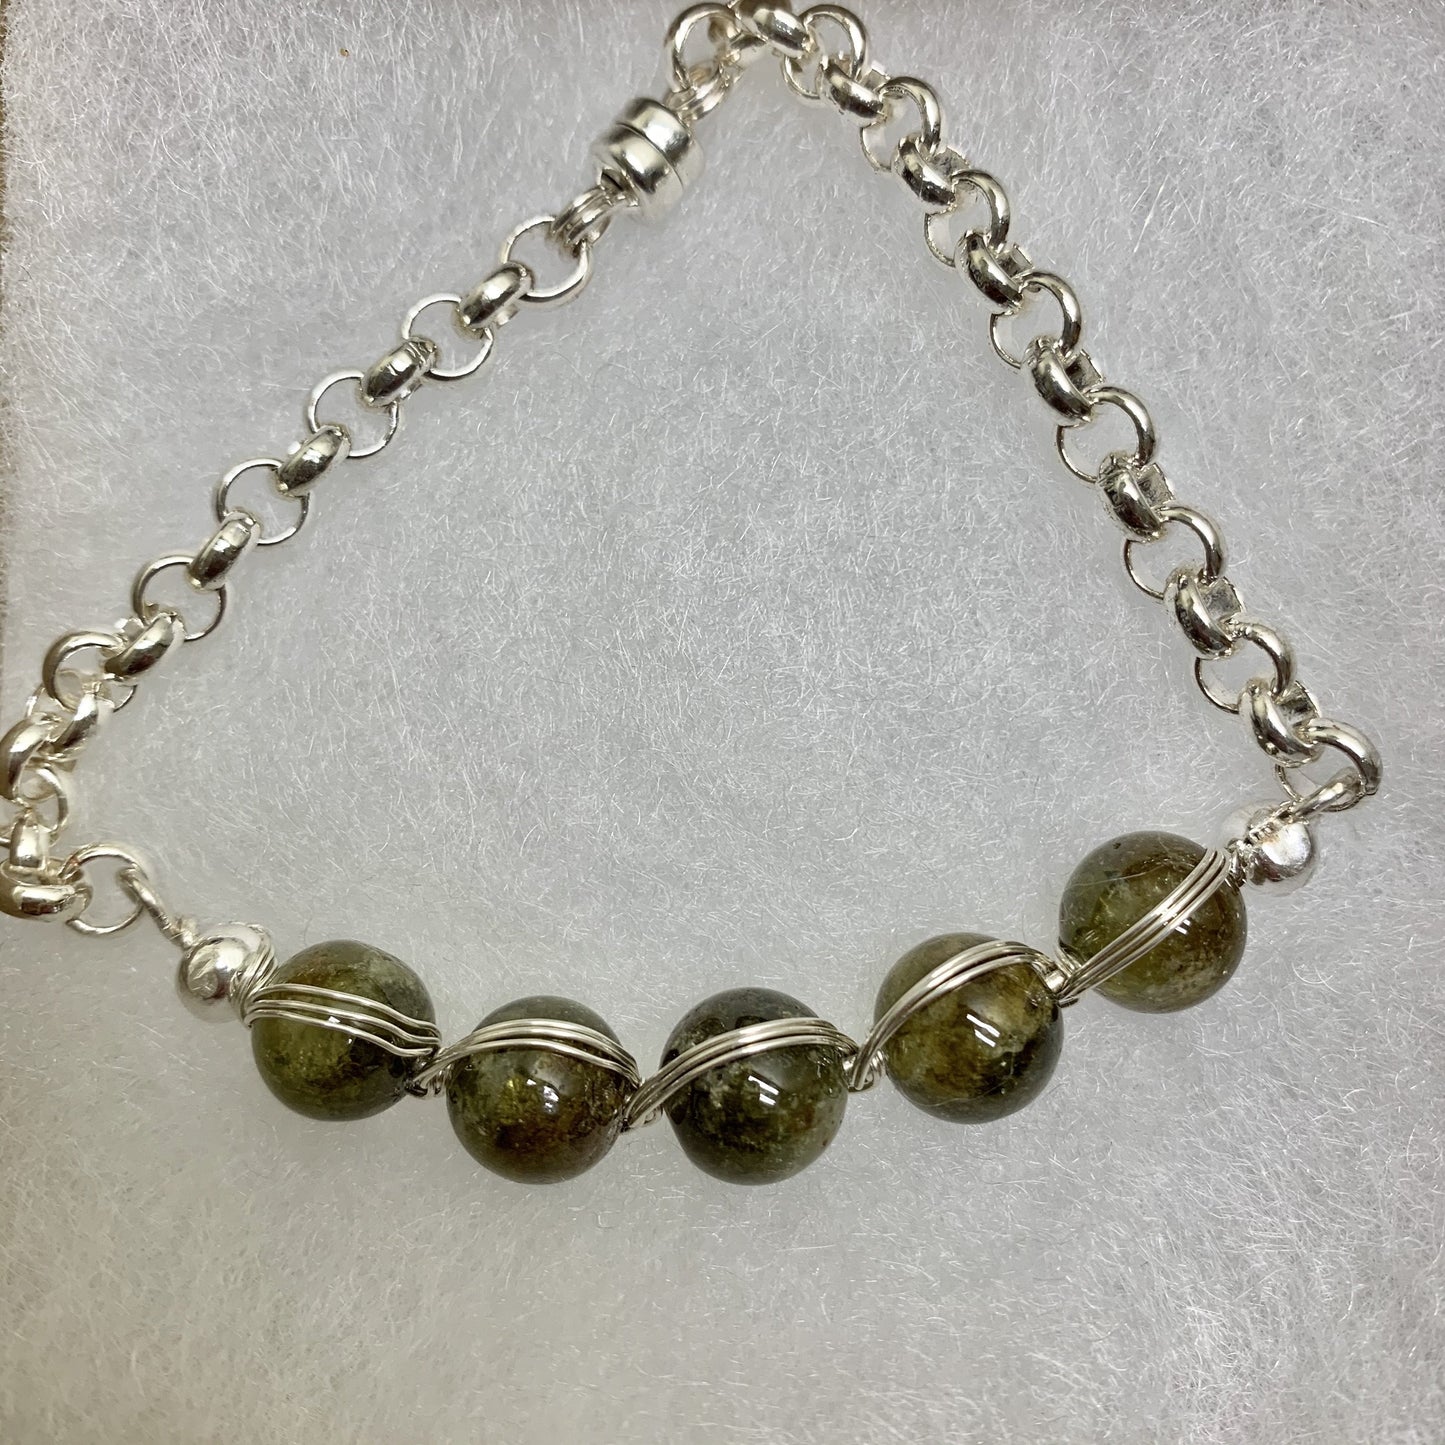 Natural gemstones silver plated bracelet